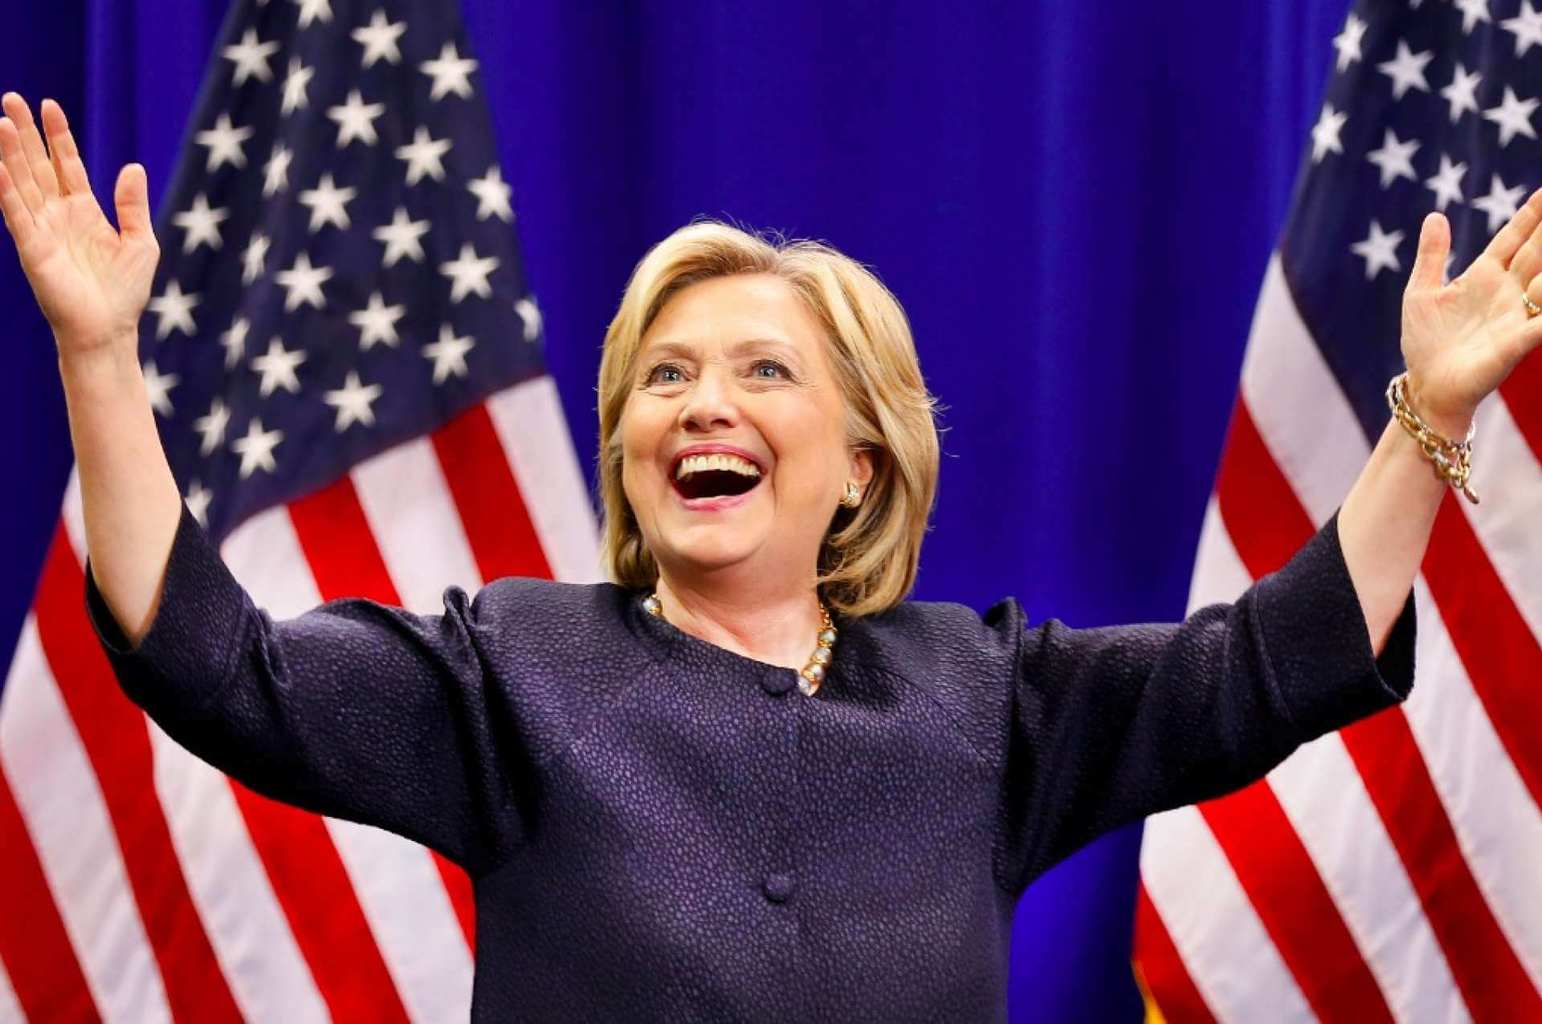 Hillary Clinton Raises Arms